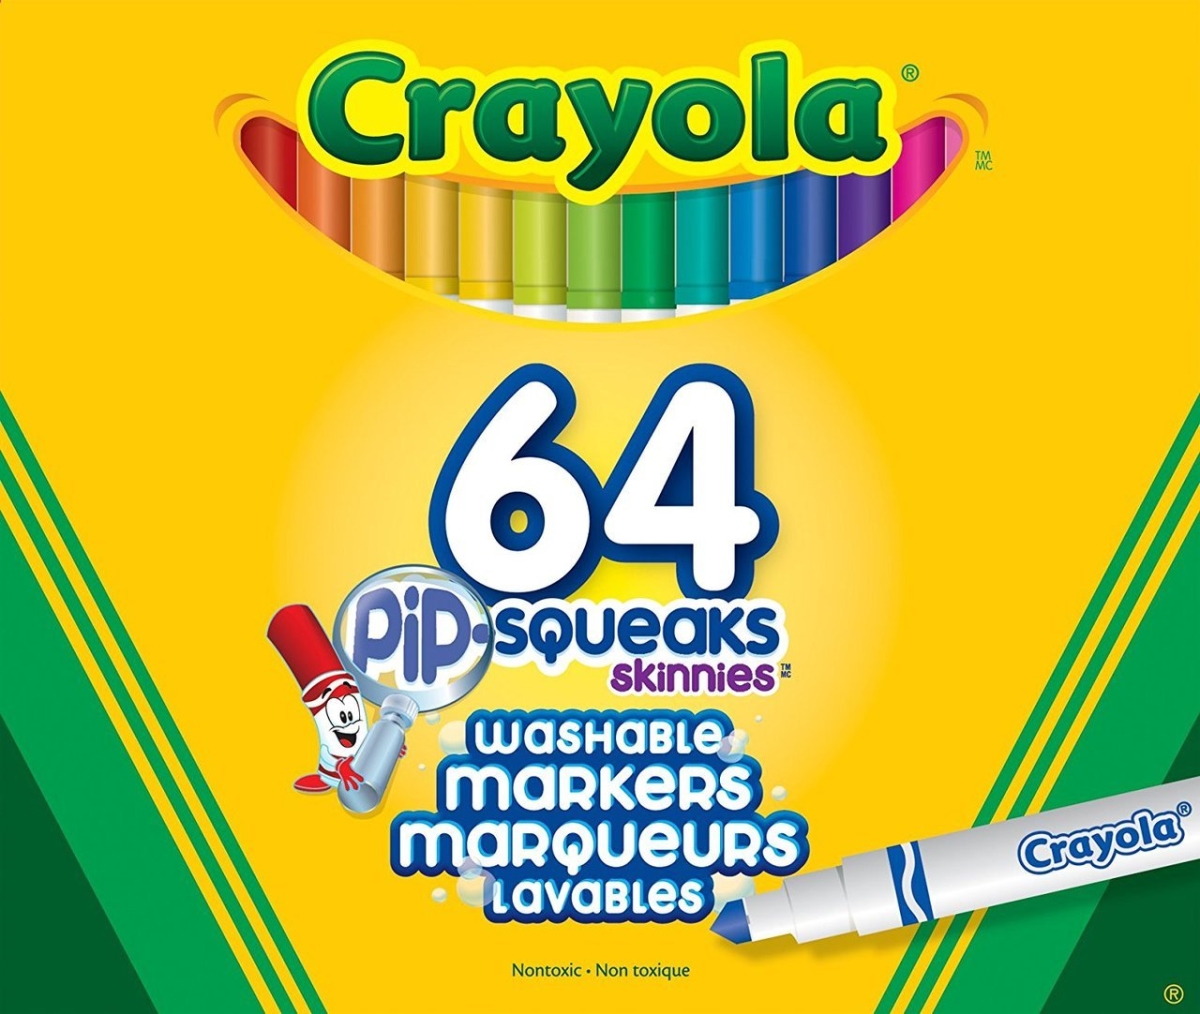 Crayola 30363955 64 Pip-squeak Skinnies Markers